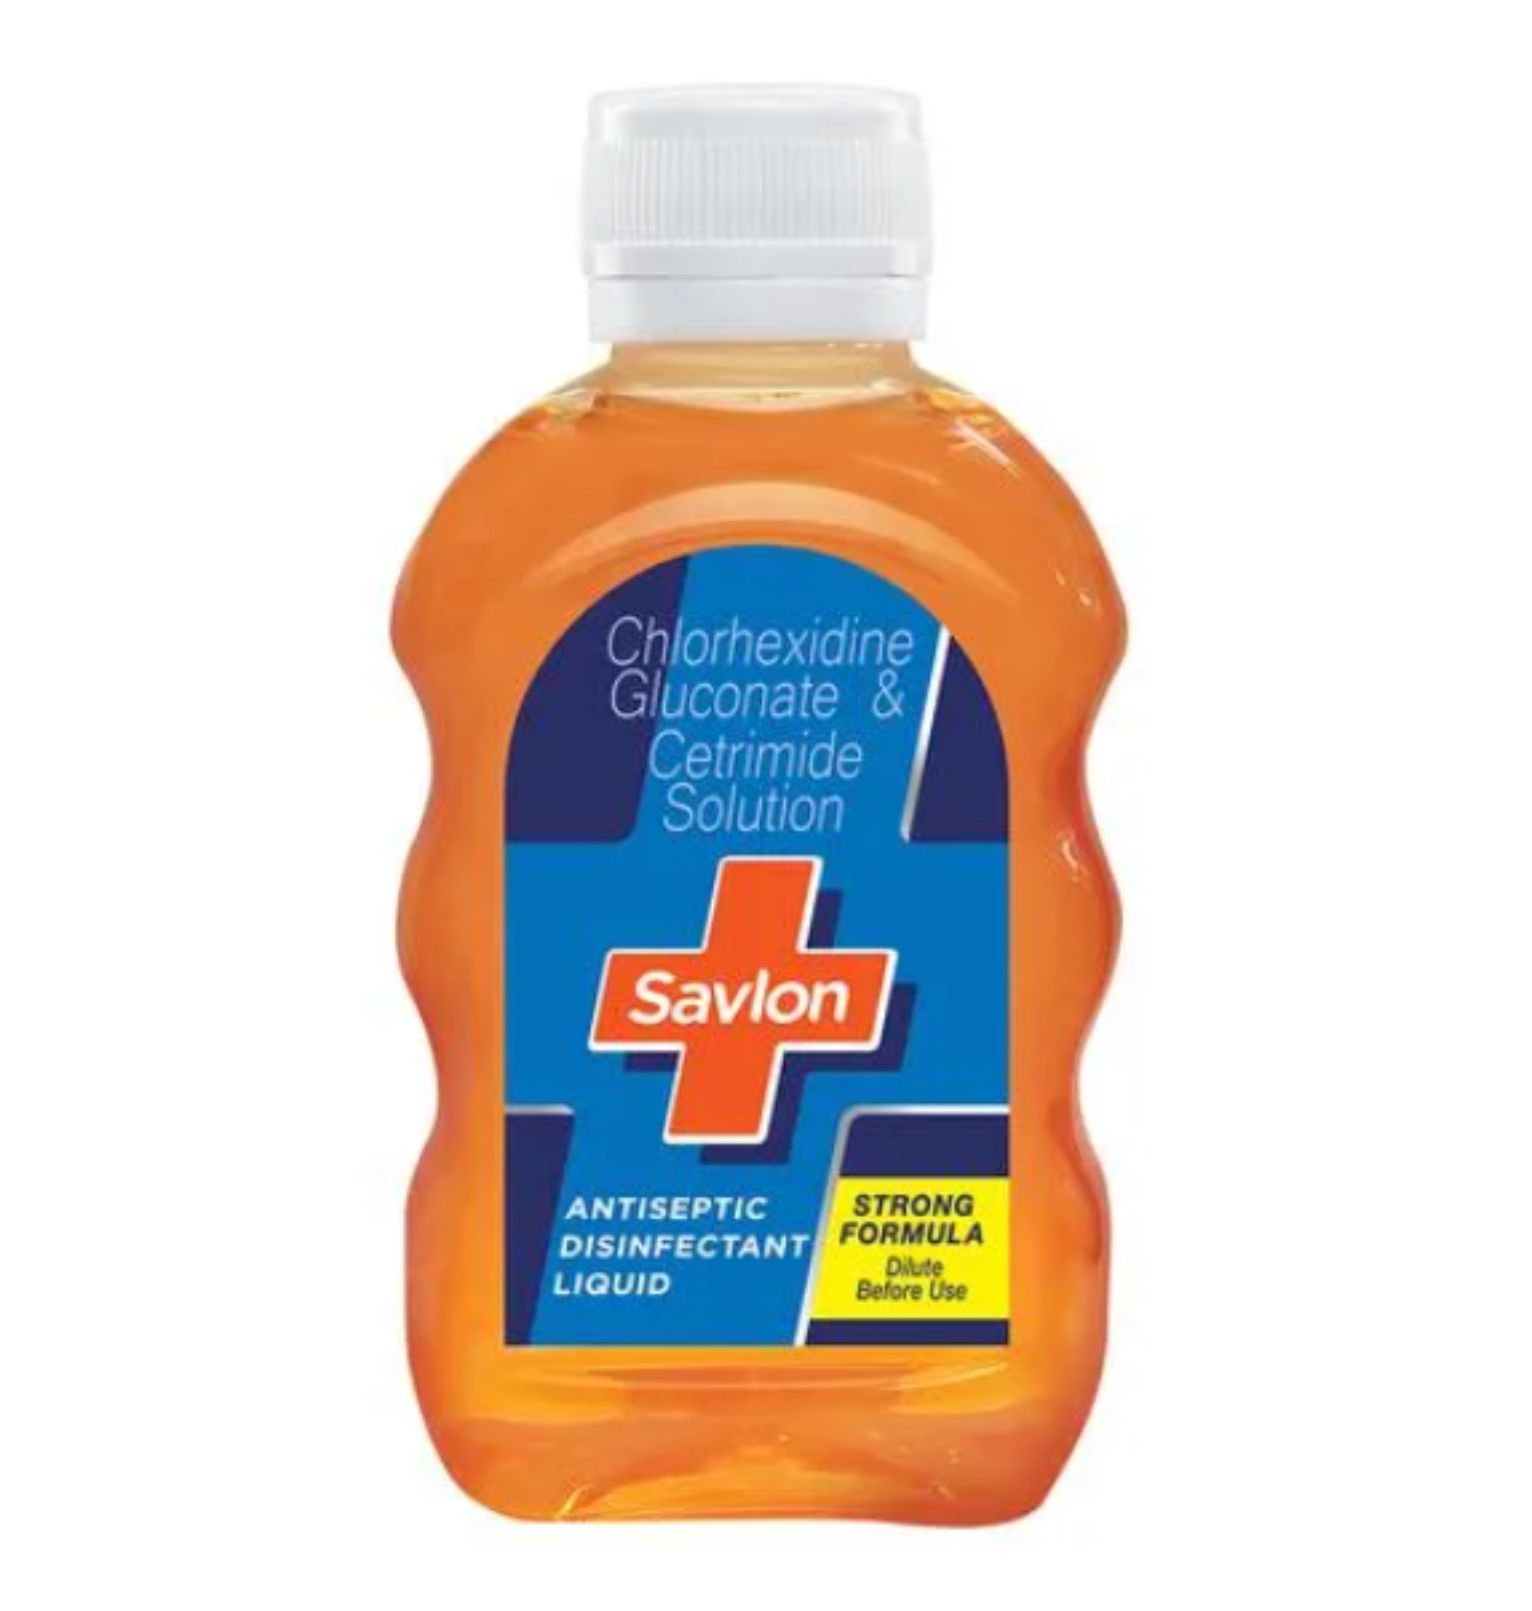 Savlon Antiseptic Disinfectant Liquid, 50 ml Bottle